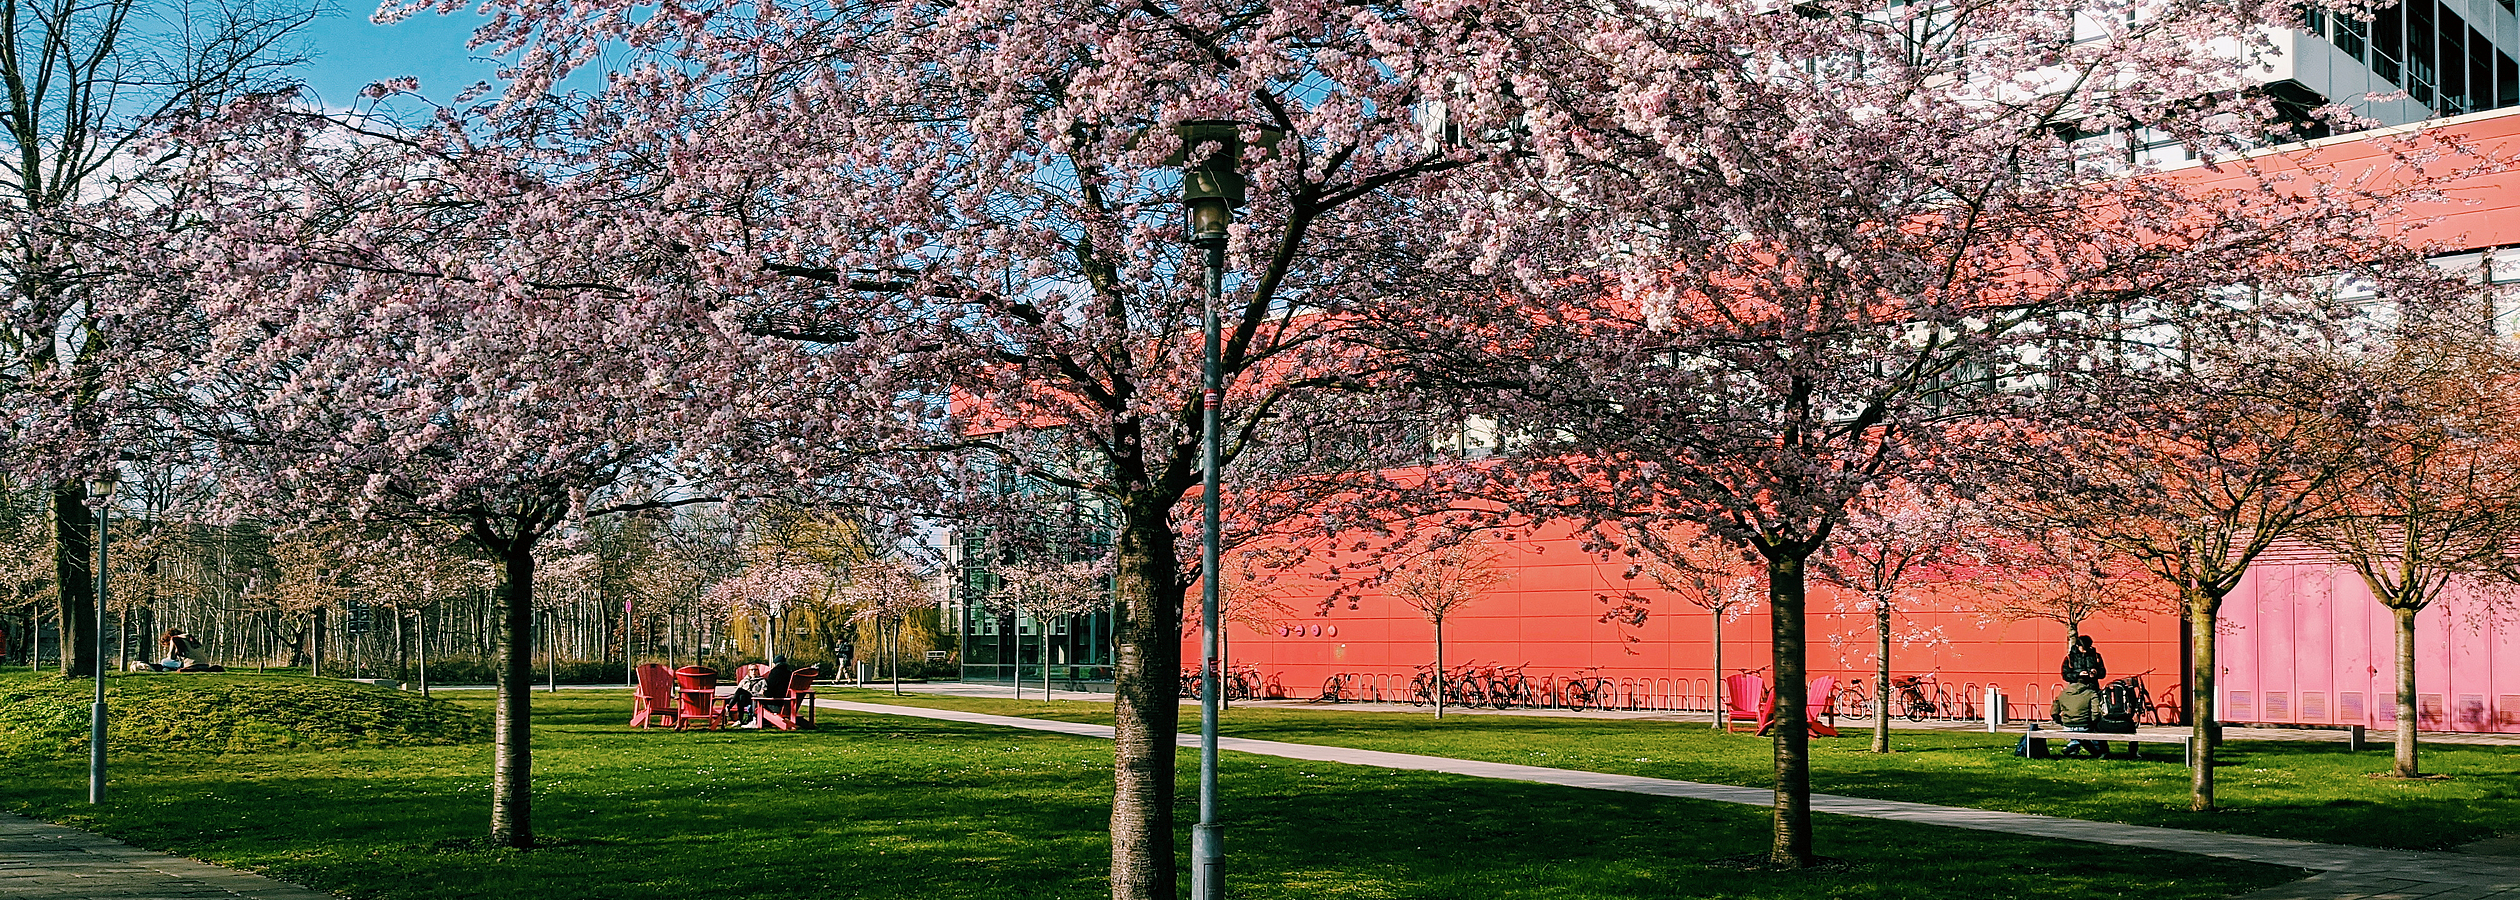 Kirschblten auf dem Campus